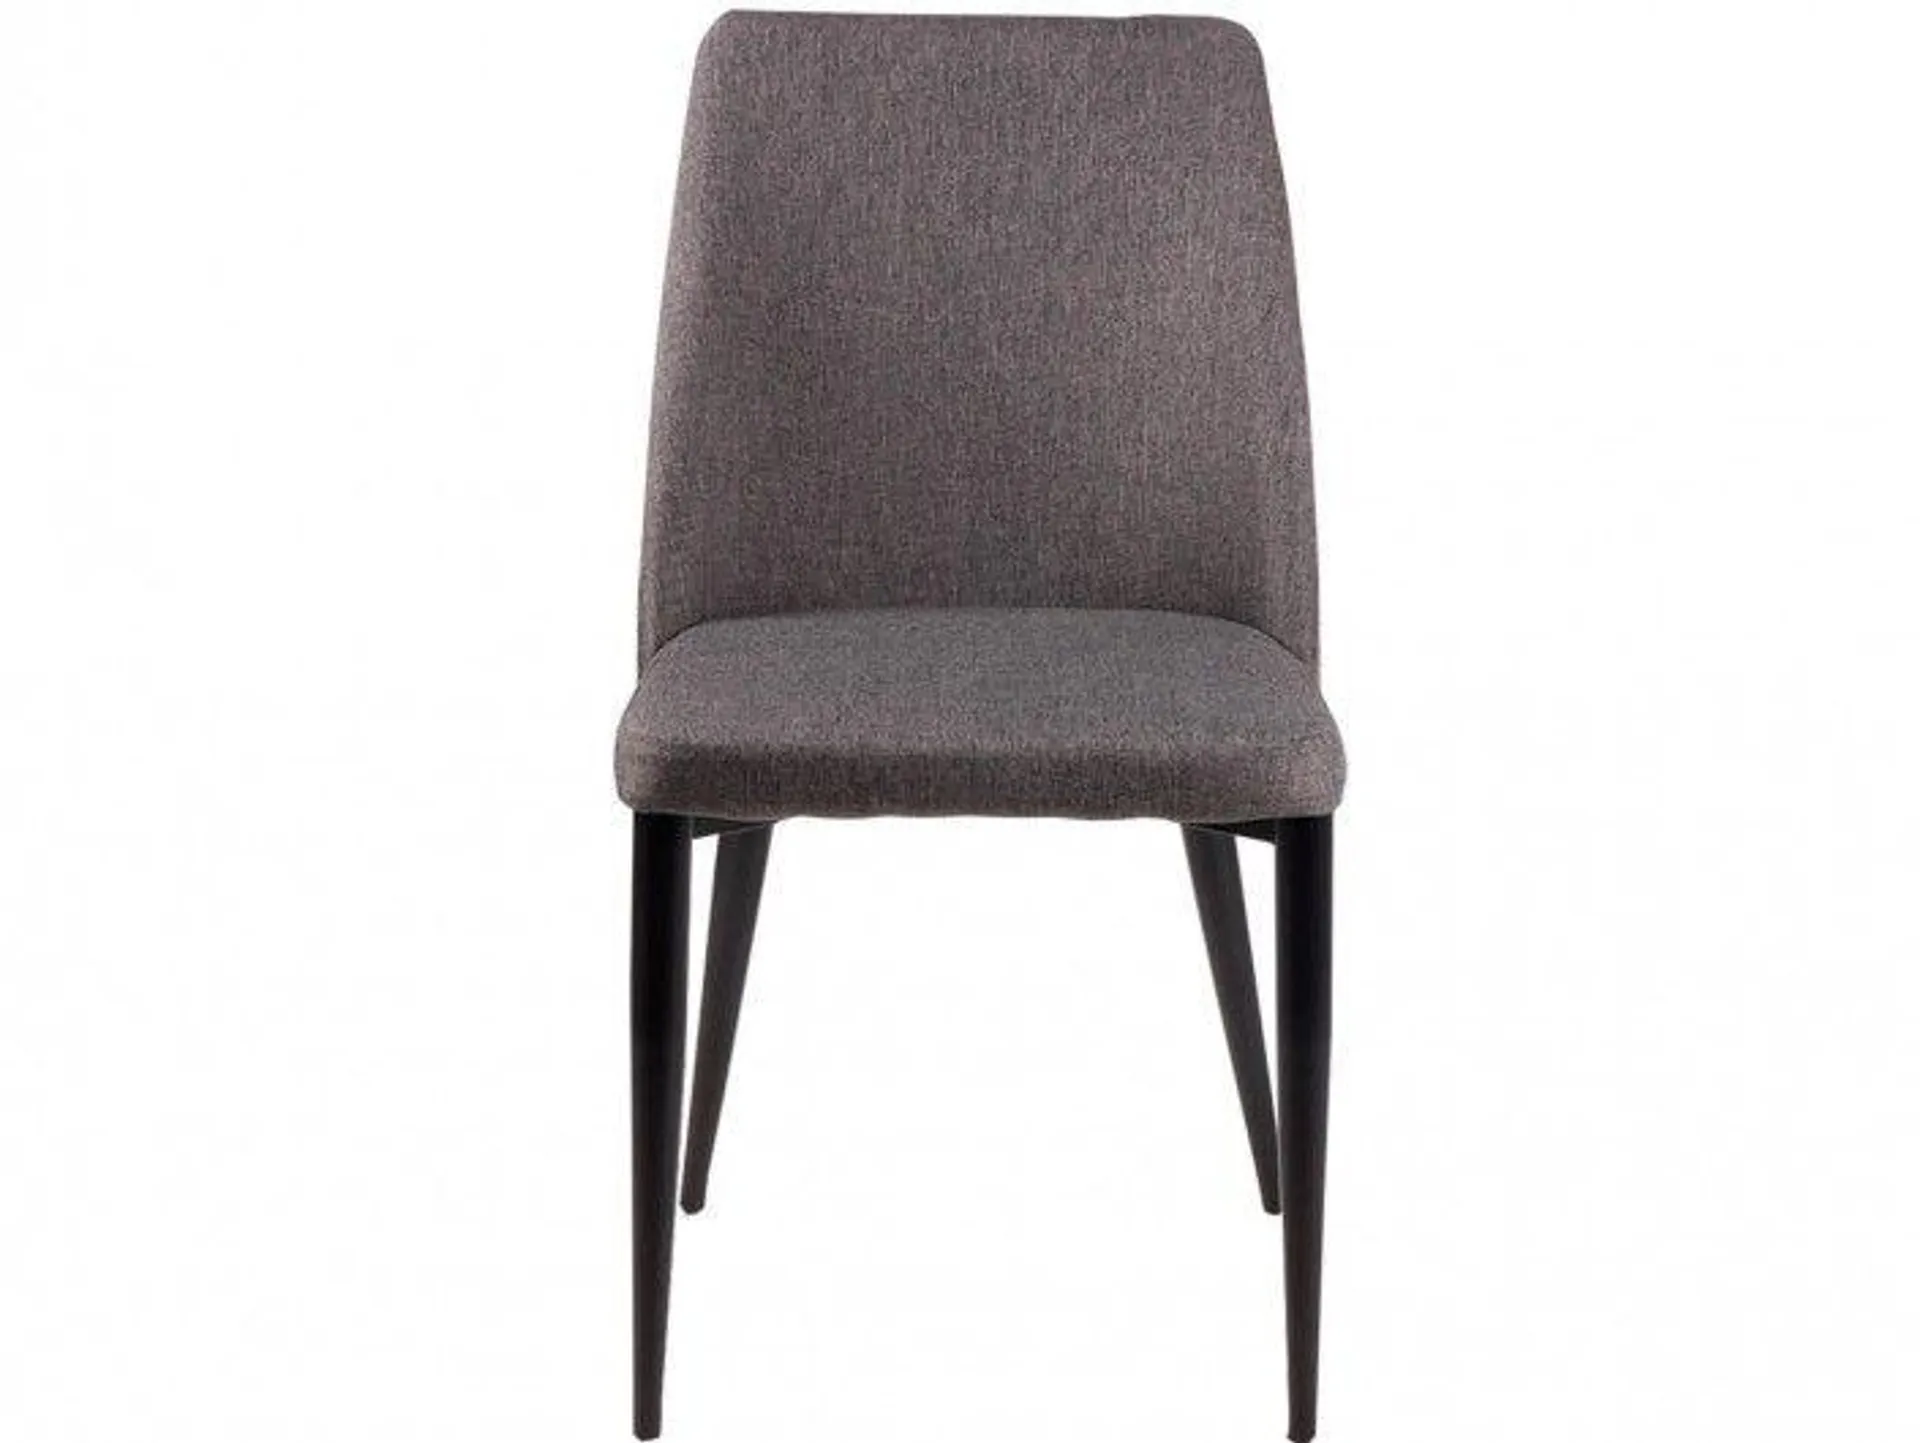 Pack 2 sillas de comedor tapizado gris oscuro y patas metálicas